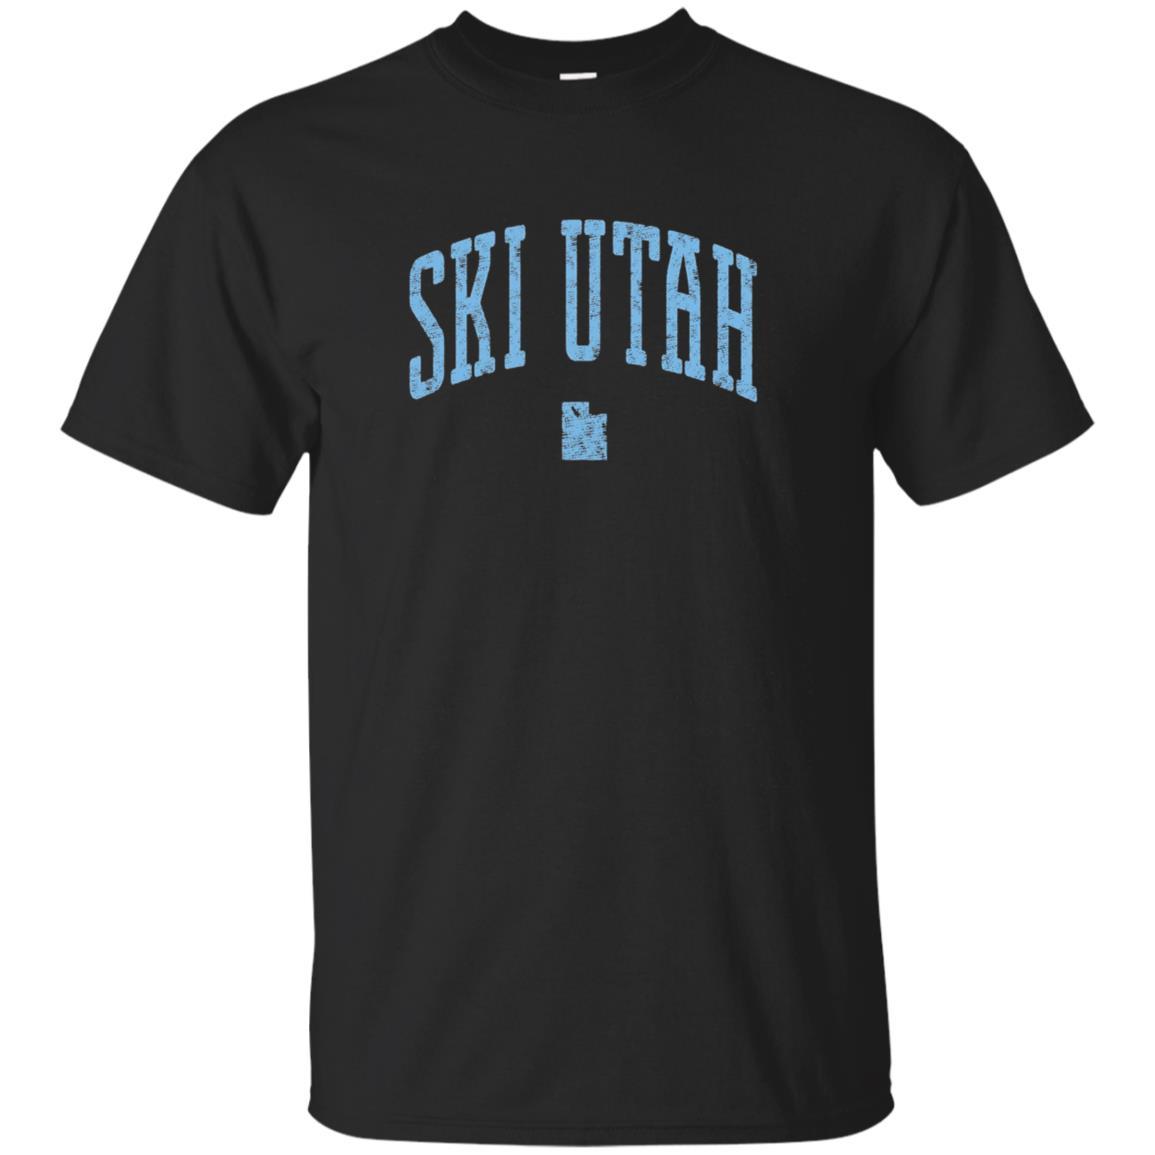 Ski Utah Vintage Styled T-shirt